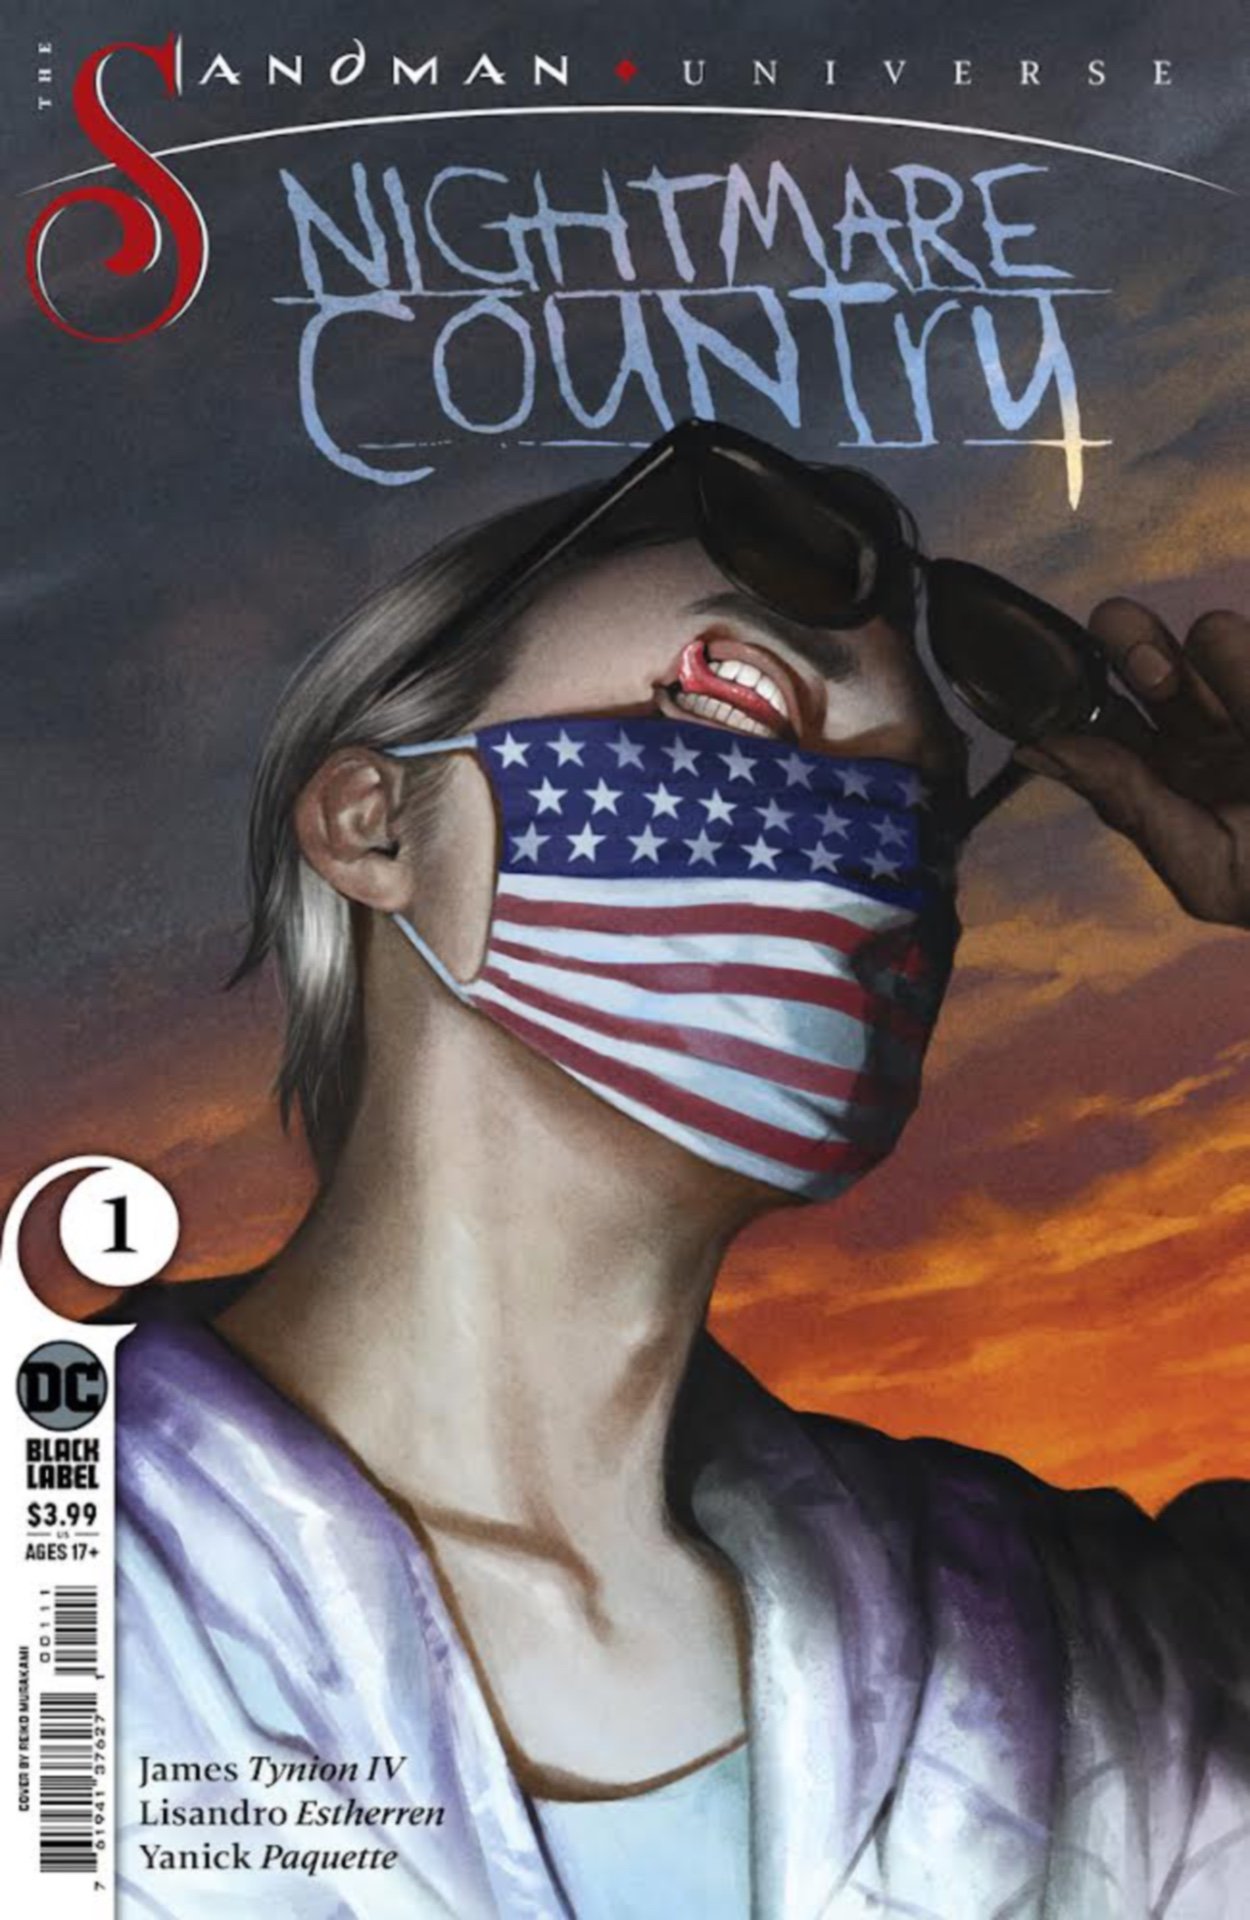 Cover di The Sandman Universe: Nightmare Country 1 di Reiko Murakami, con il Corinzio